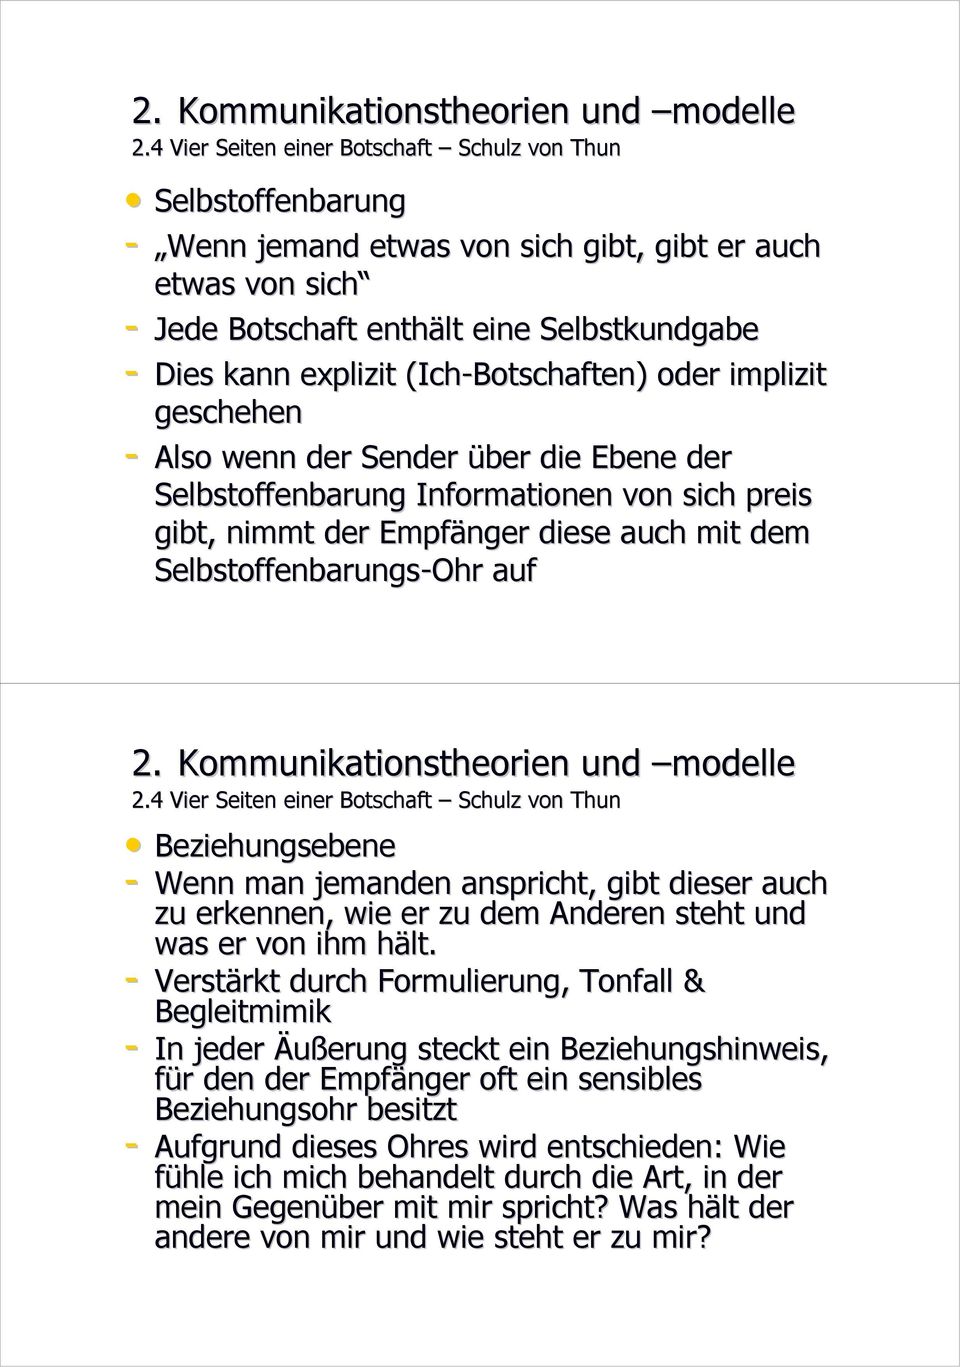 auf 2.4 Vier Seiten einer Botschaft Schulz von Thun Beziehungsebene - Wenn man jemanden anspricht, gibt dieser auch zu erkennen, wie er zu dem Anderen steht und was er von ihm hält.